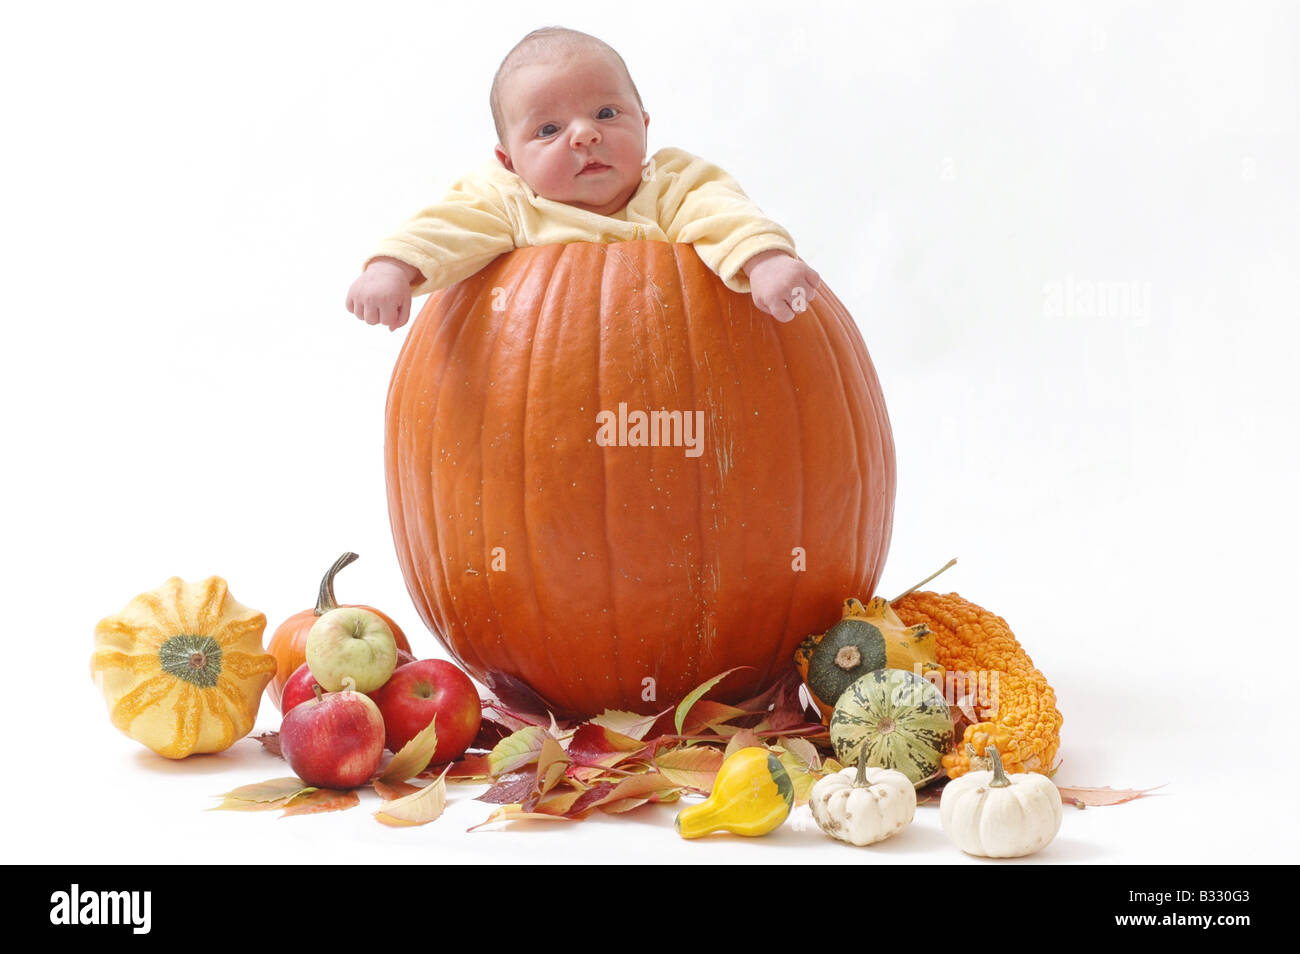 Baby in pumpkin Stock Photo